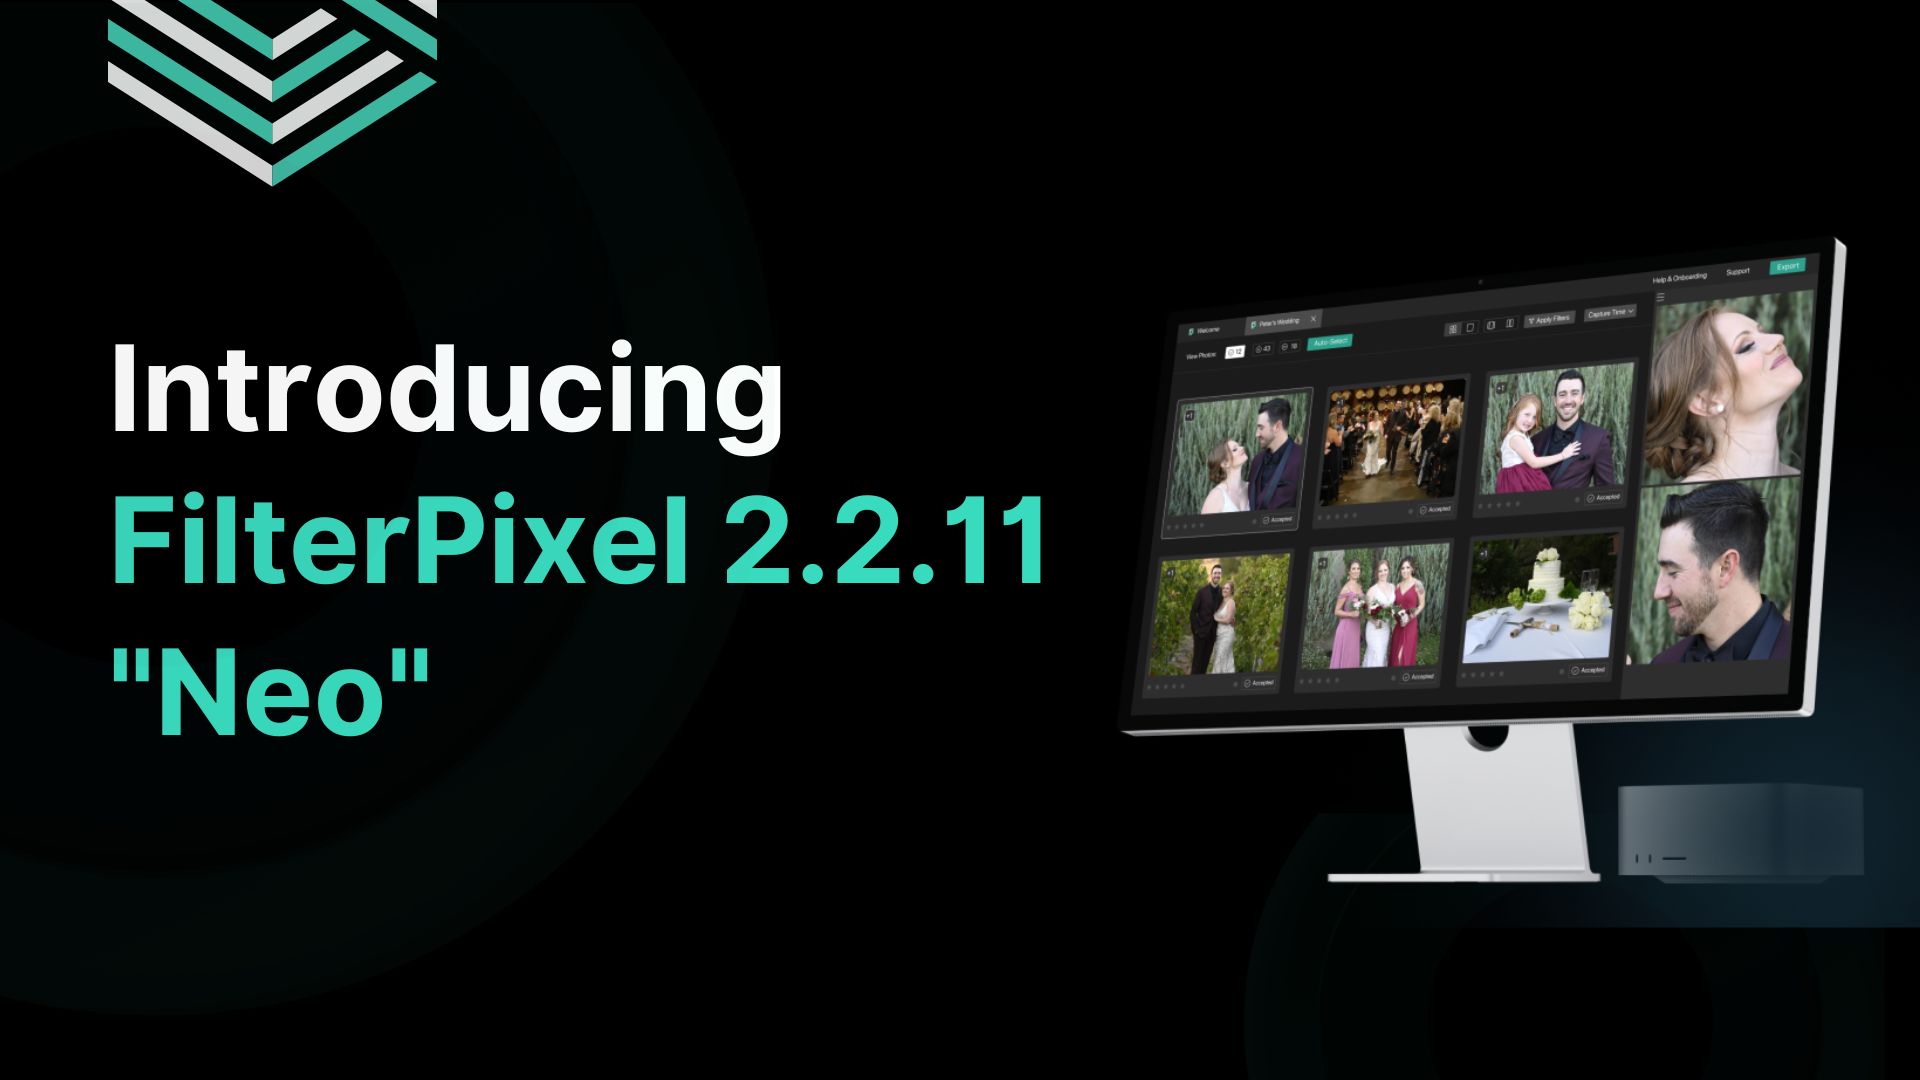 FilterPixel 2.2.11 "Neo"